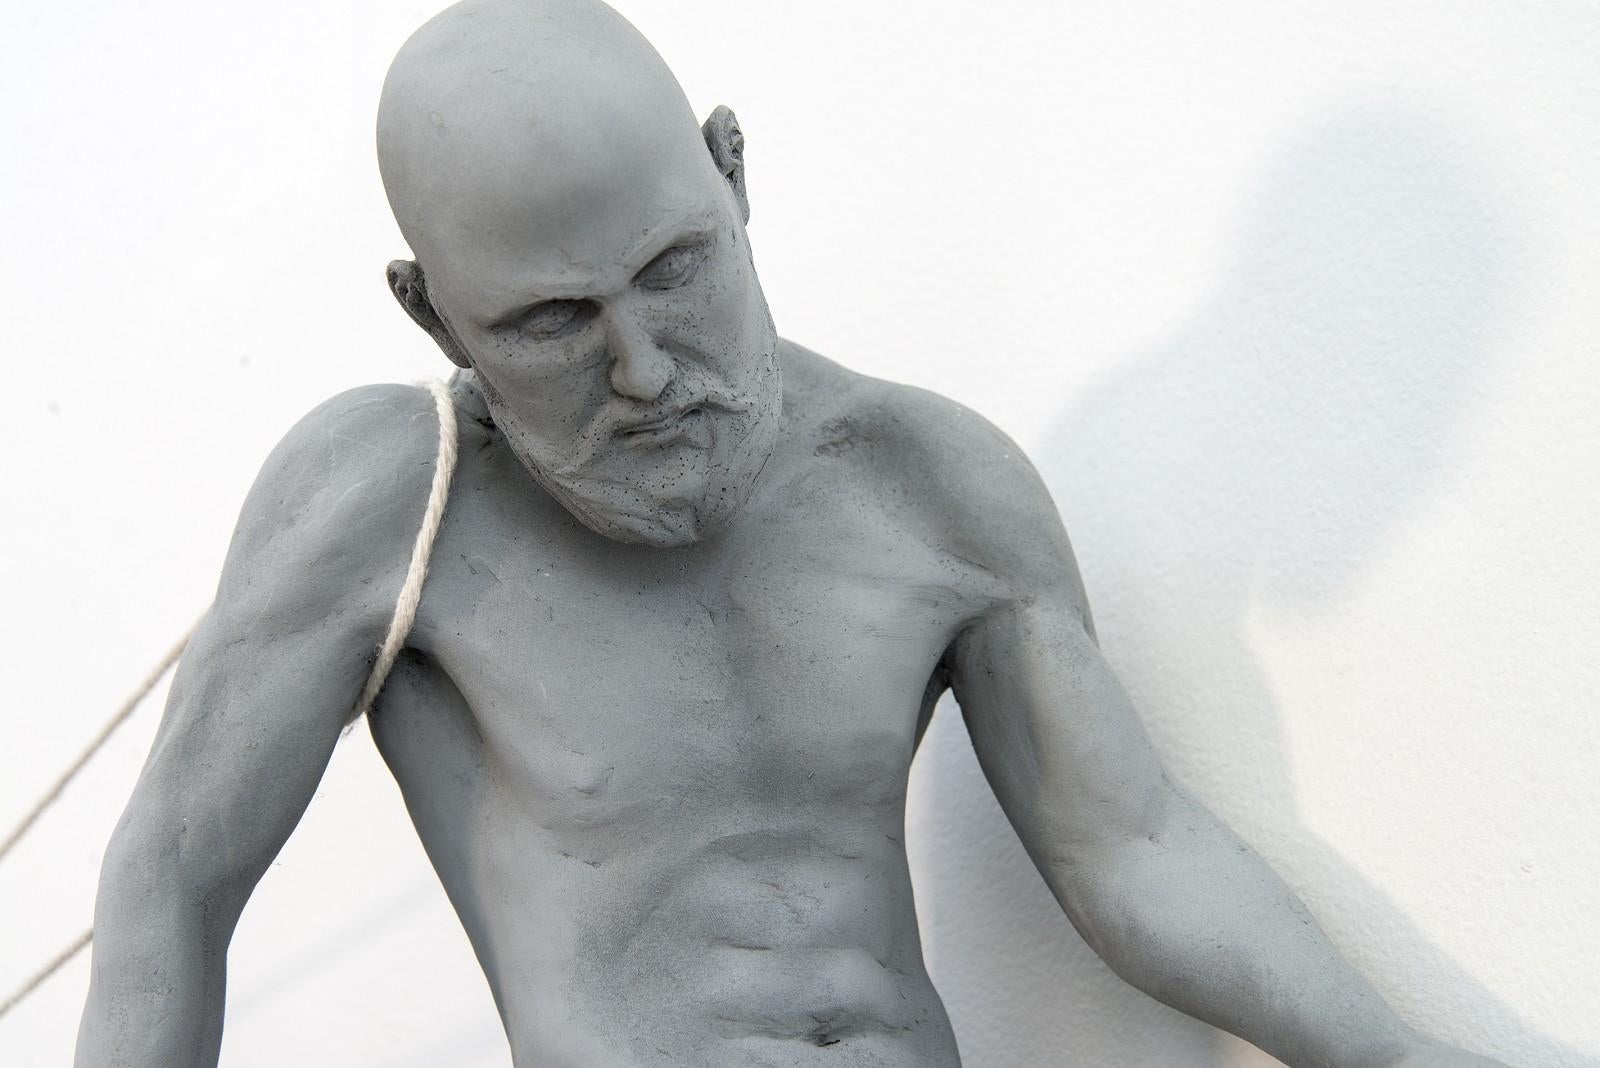 Der kanadische Bildhauer WW Hung hat eine weitere ergreifende und kraftvolle Pose gewählt, um in dieser zeitgenössischen Mixed-Media-Arbeit den Zustand des Menschen zu erkunden.

Ein nackter Mann sitzt auf dem Rand eines kindlichen Wippbretts, das